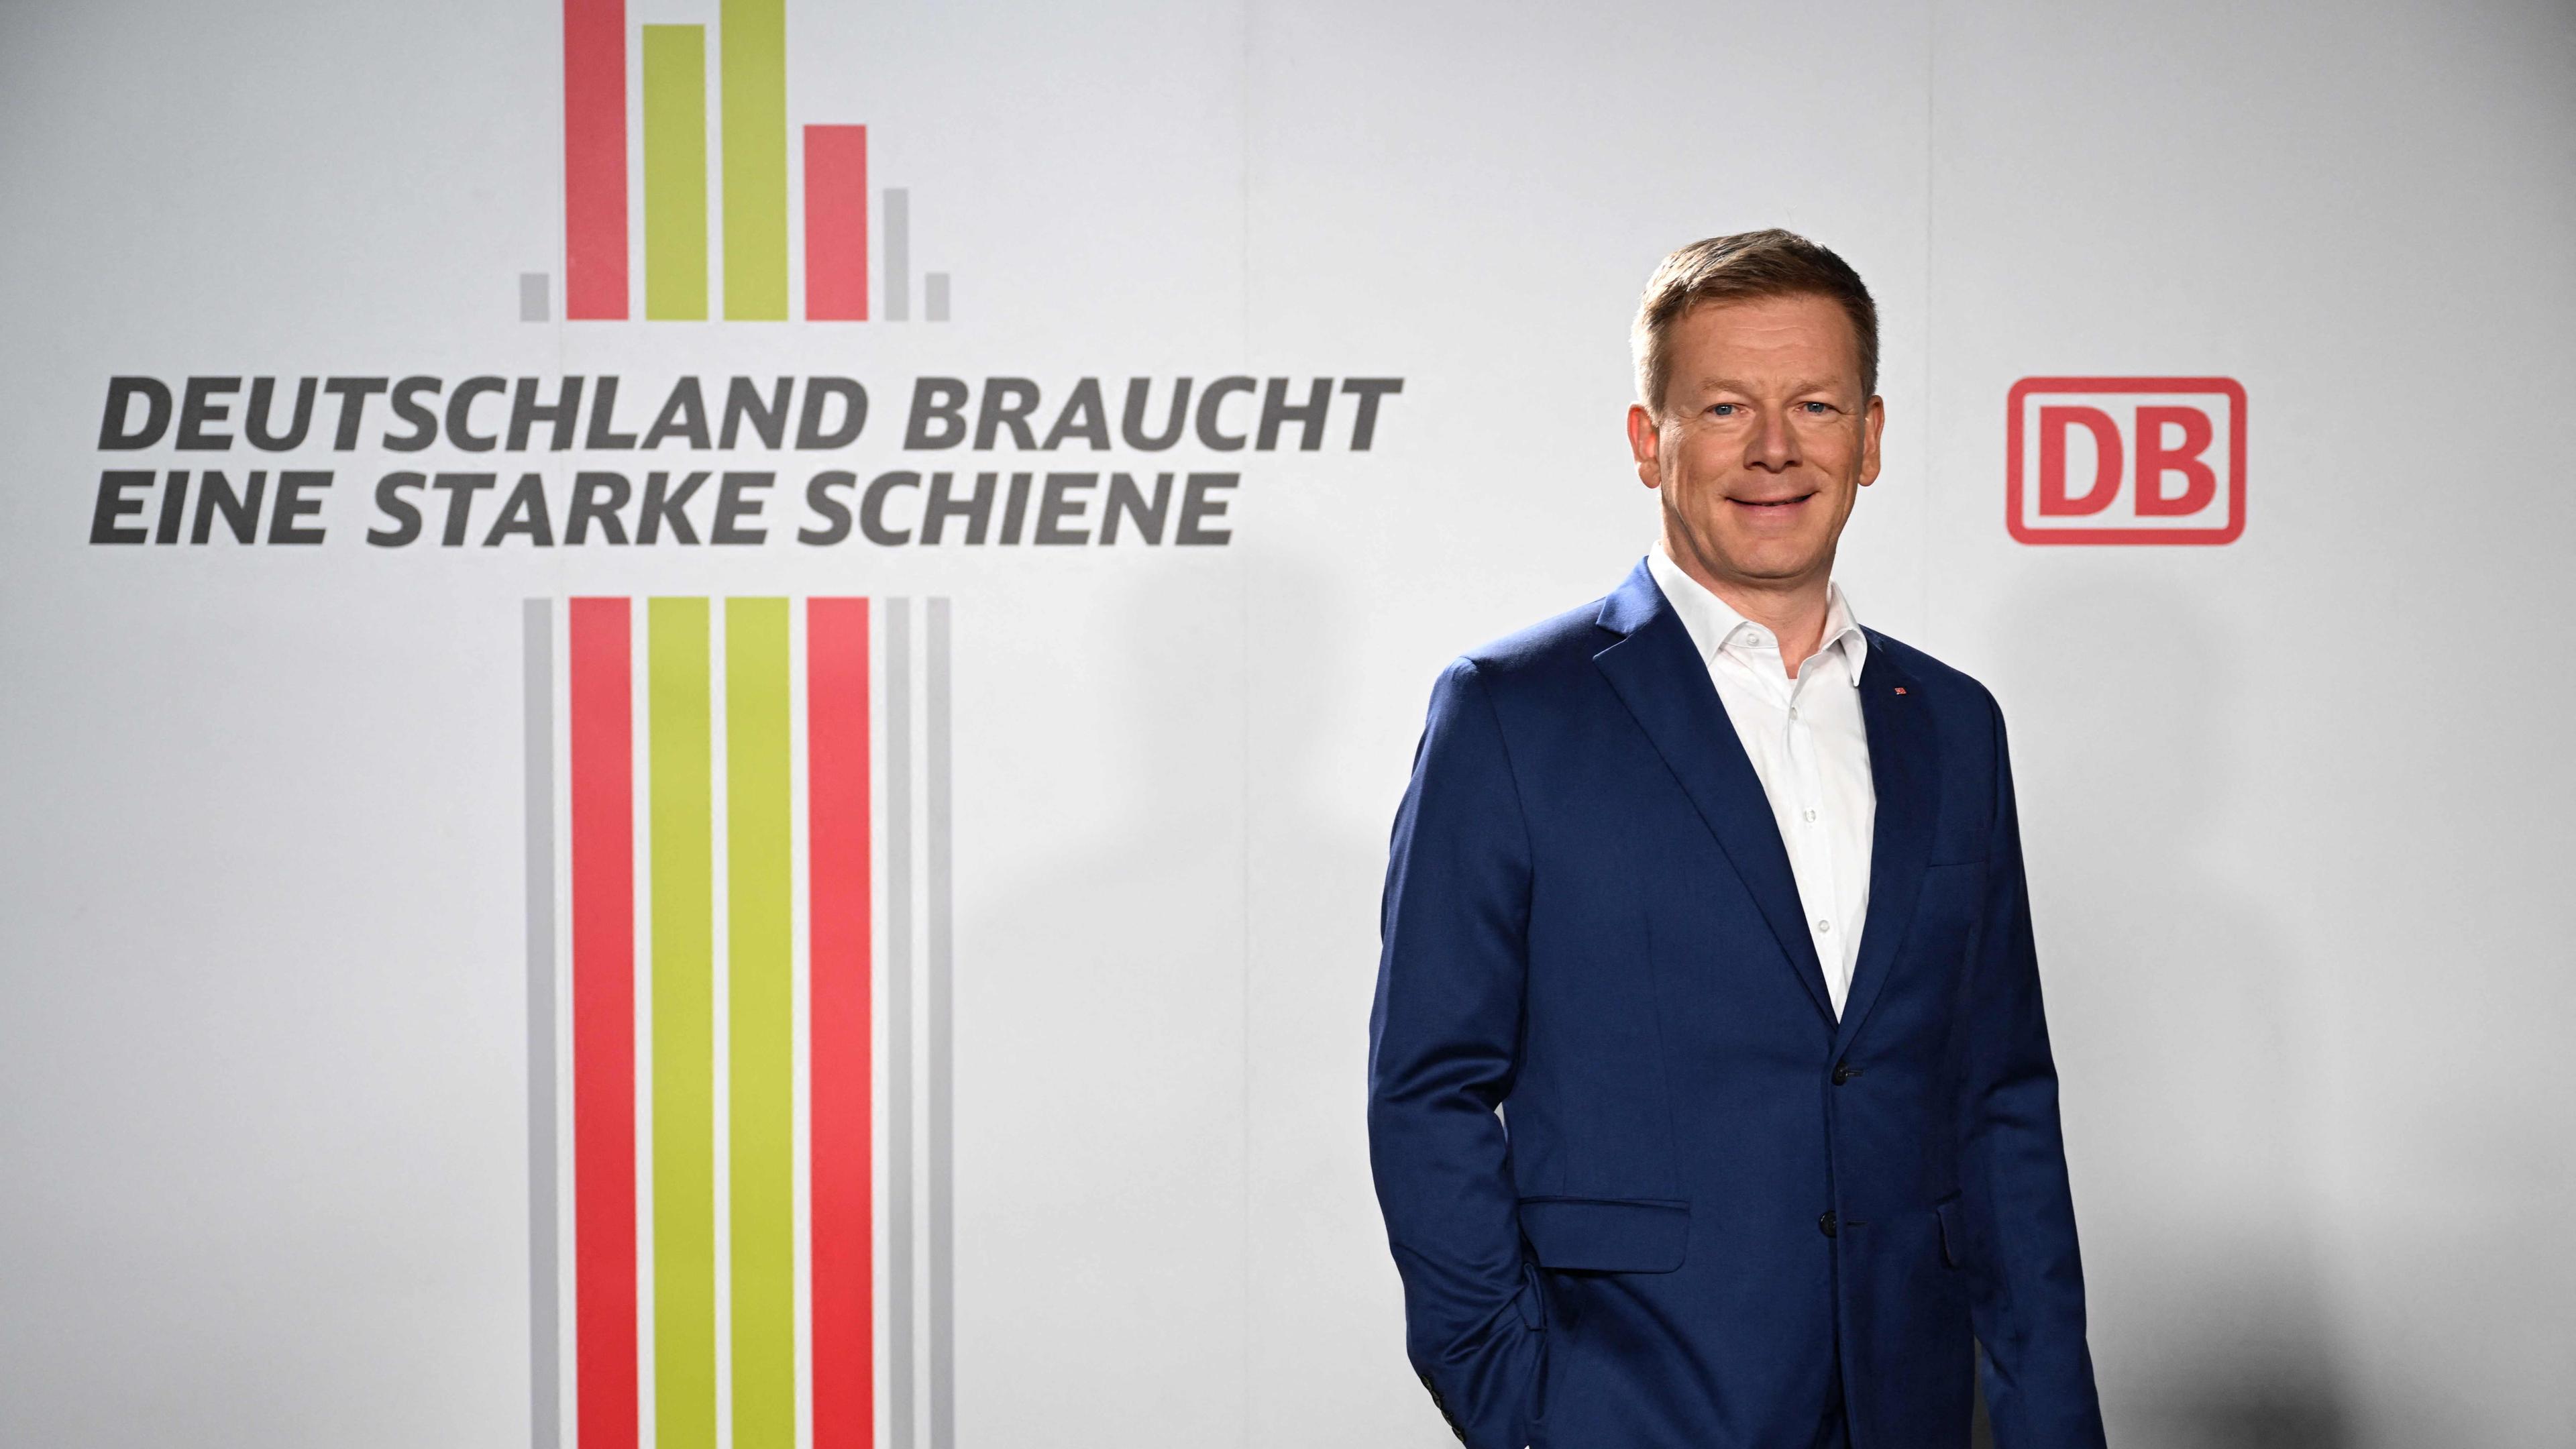 Zu sehen ist der CEO der Deutschen Bahn, Richard Lutz, vor dem DB-Logo und dem Slogan "Deutschland braucht eine starke Schiene".